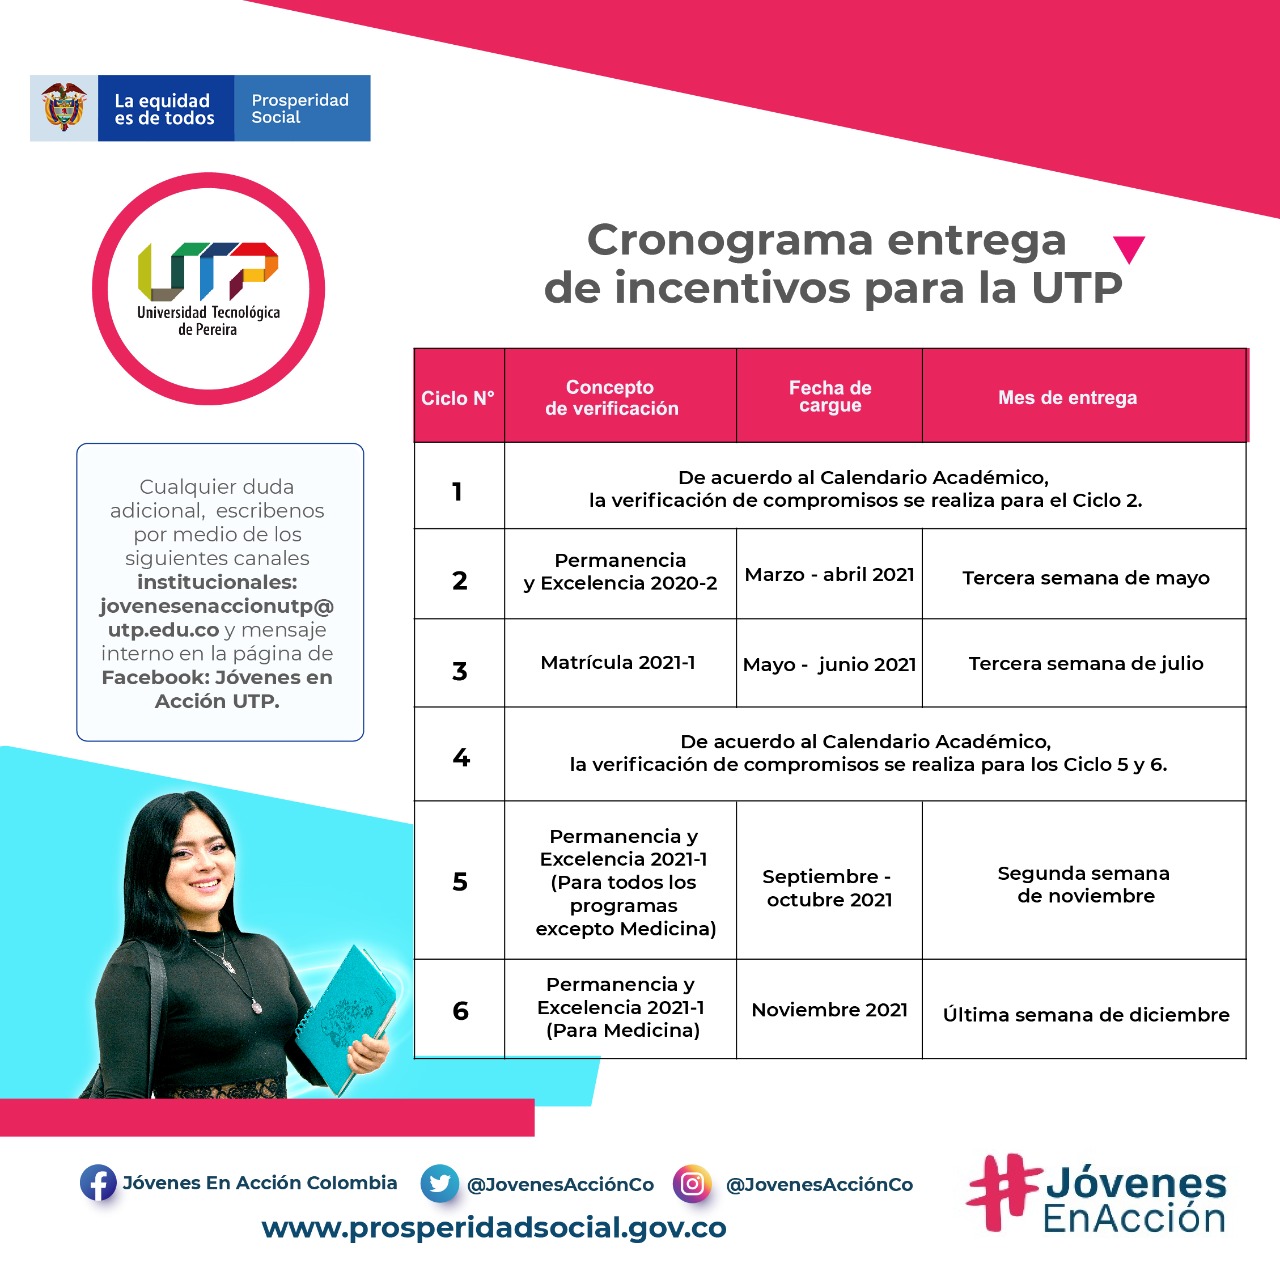 Cronograma entrega de incentivos programa Jóvenes en Acción para la Universidad Tecnológica de Pereira